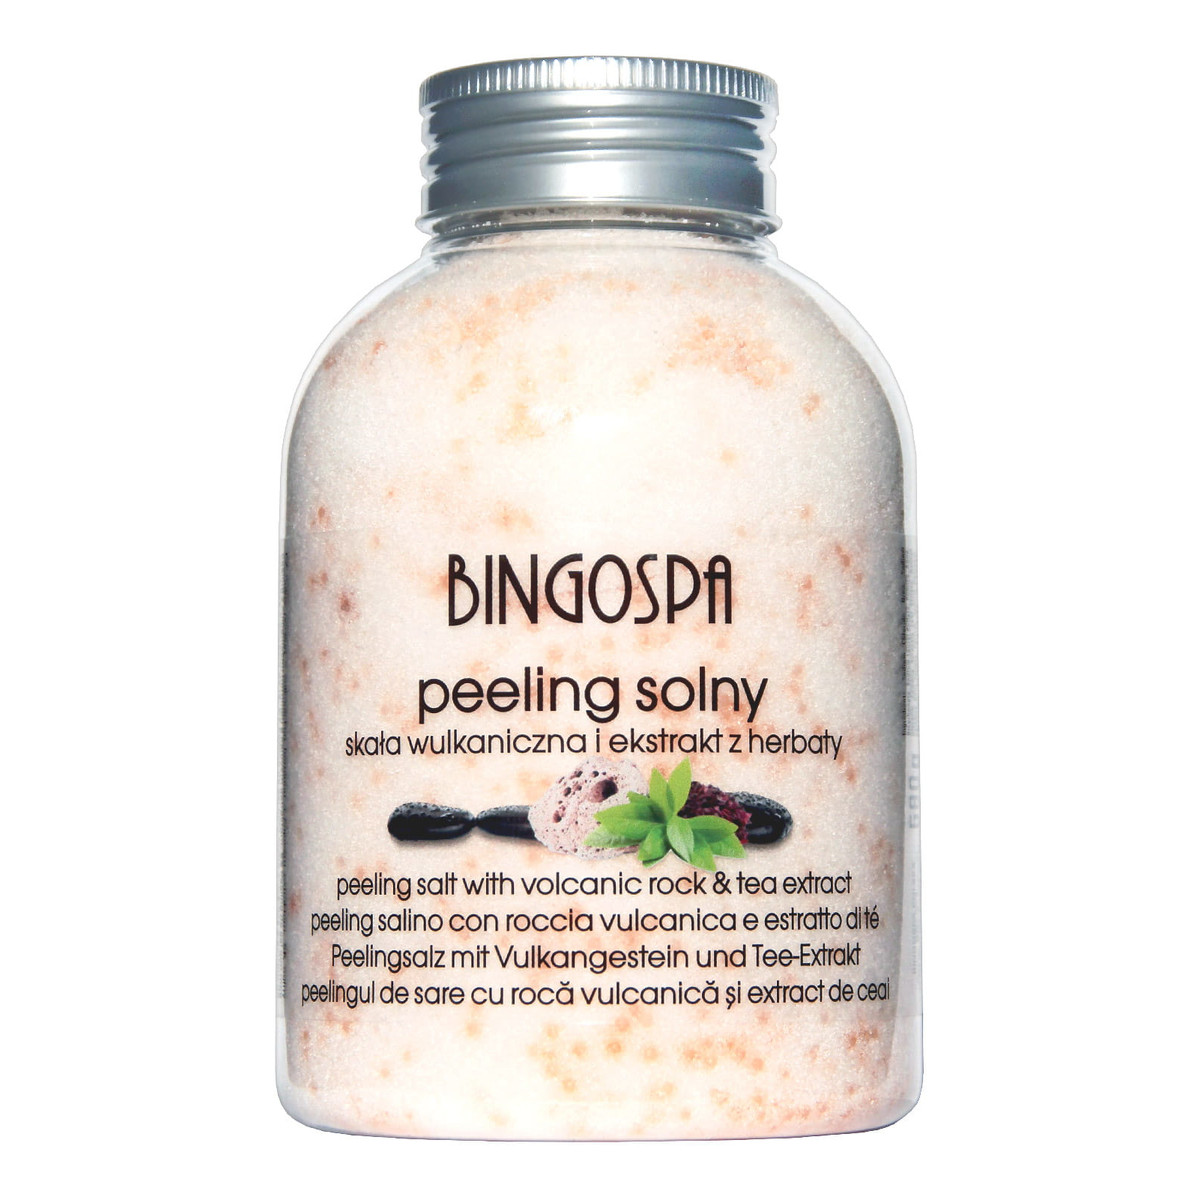 BingoSpa Sól do stóp opuchlizna i obrzęki + sól borowinowa do kąpieli + peeling solny